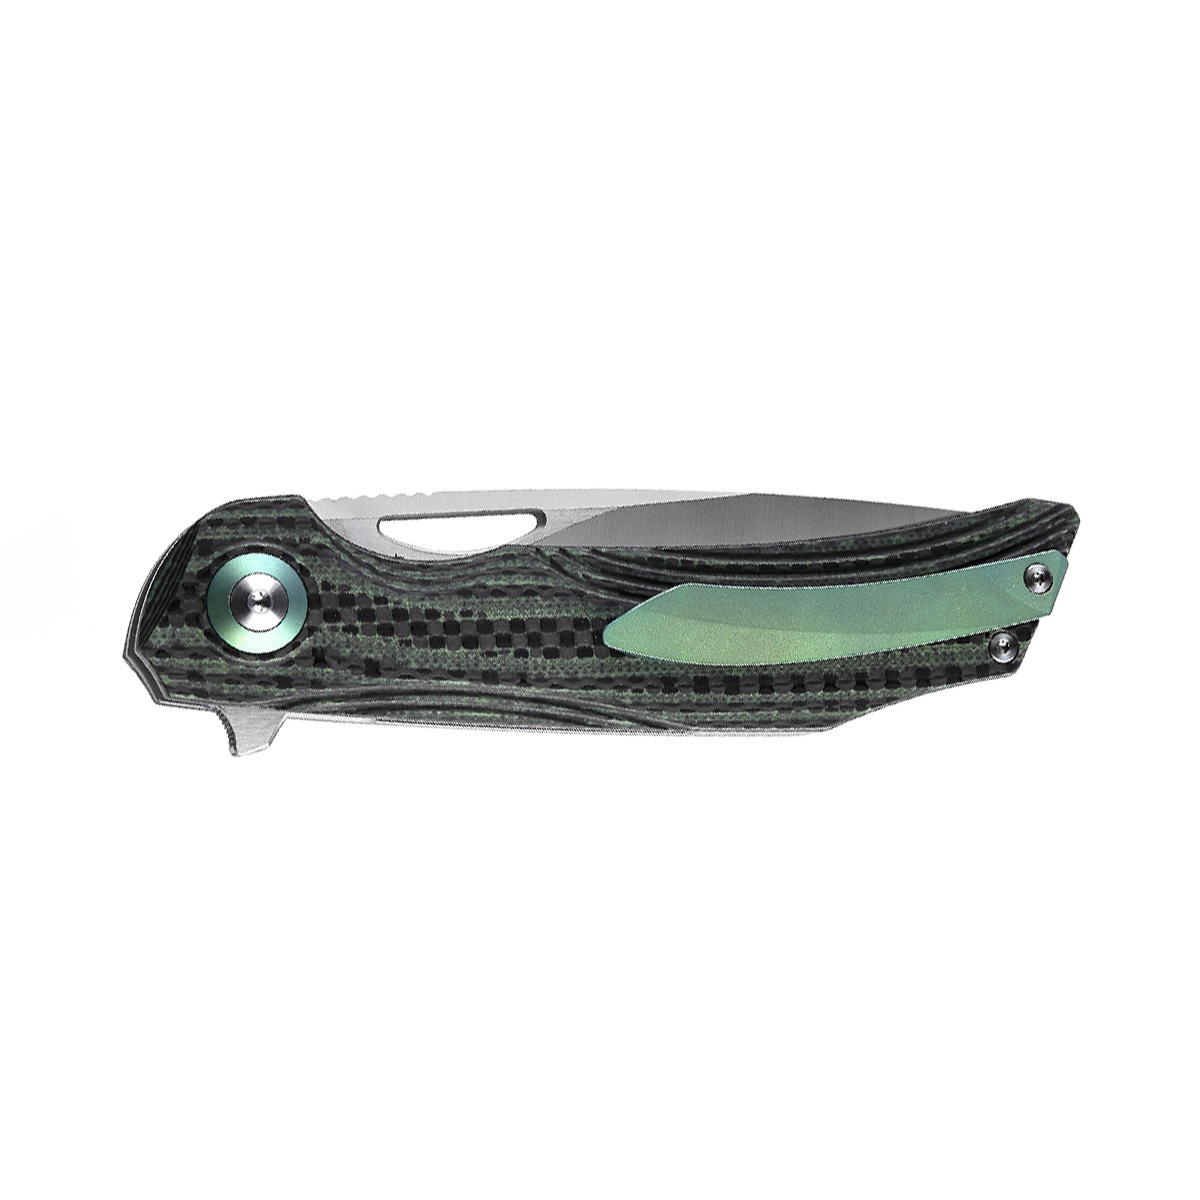 Складной нож Bestech Falko, сталь 154CM, рукоять G10/Carbon fiber, зеленый - фото 2